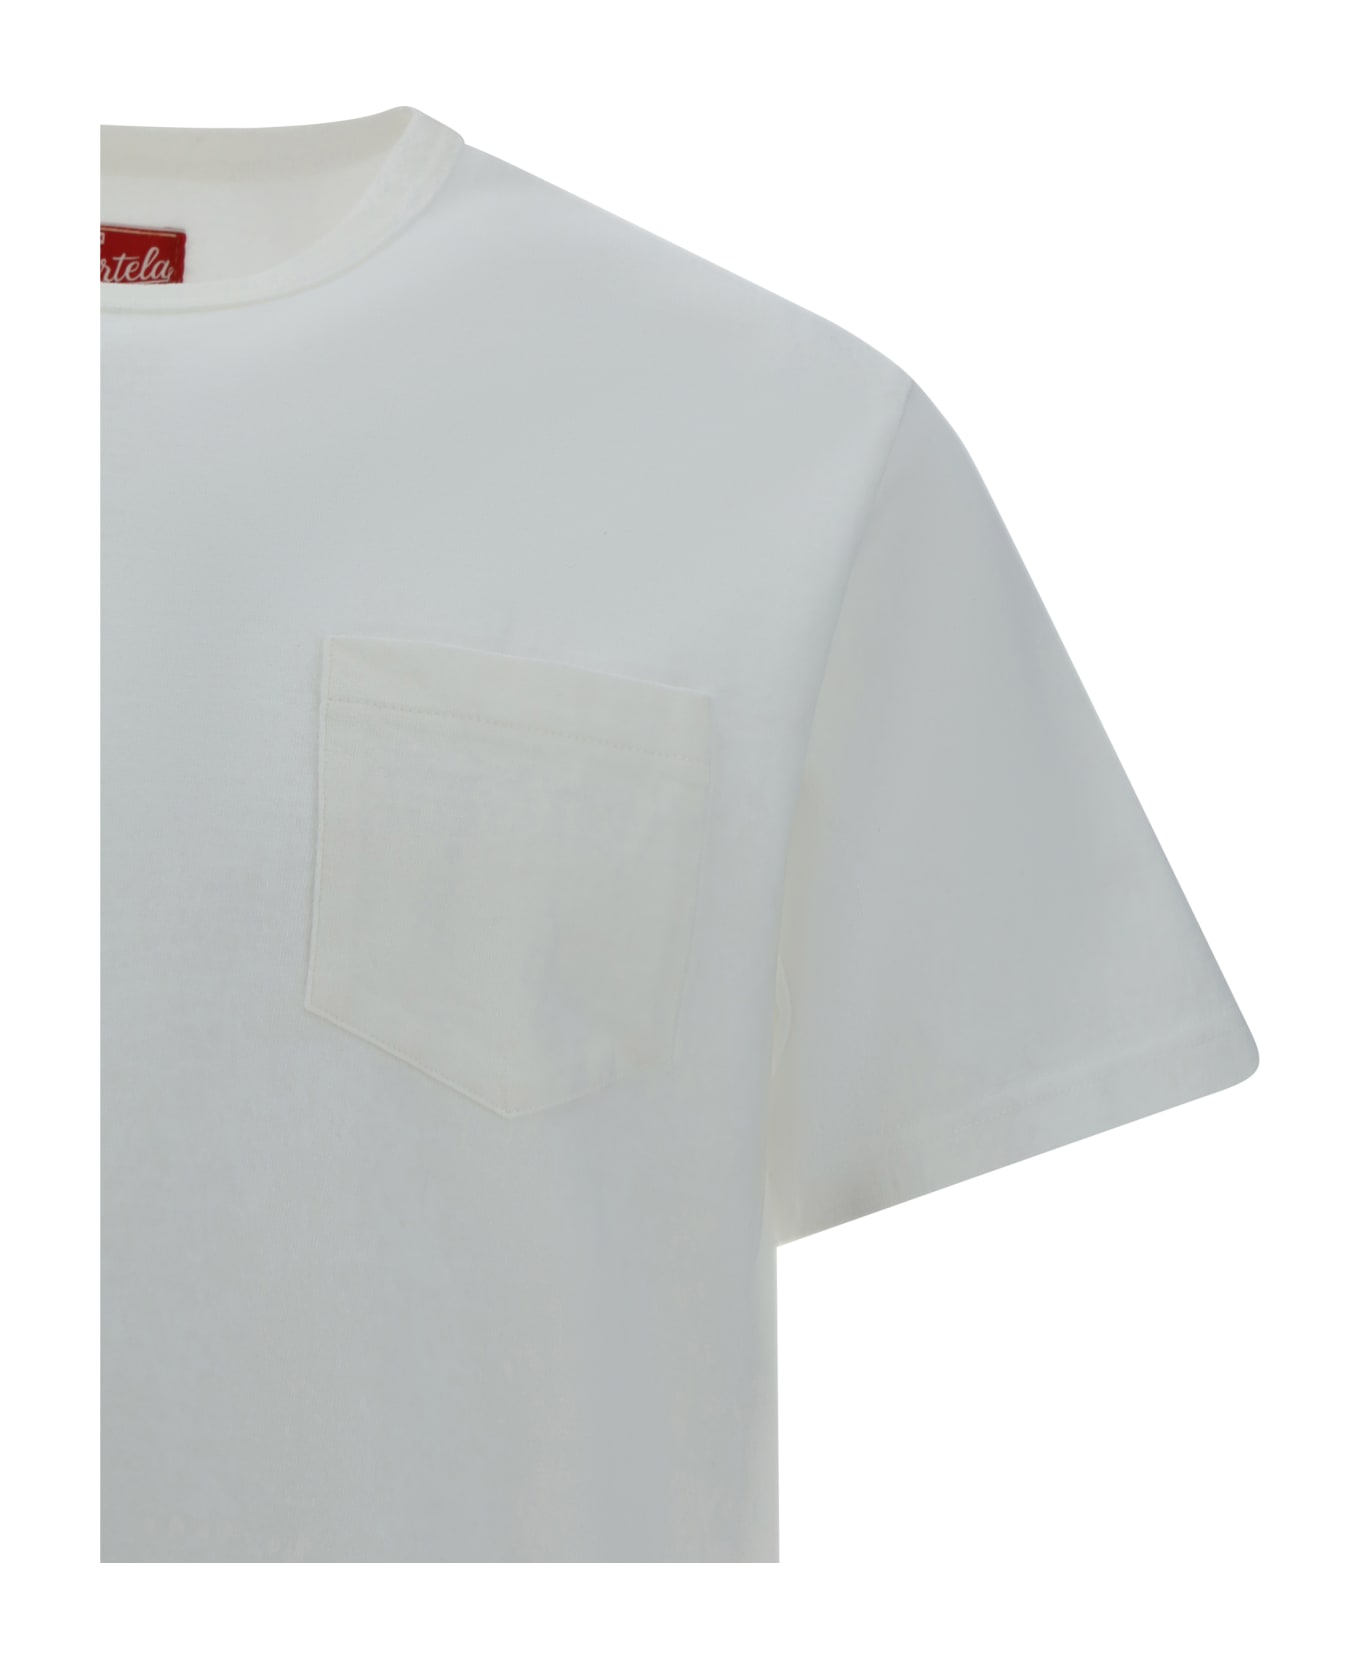 Fortela T-shirt - _white